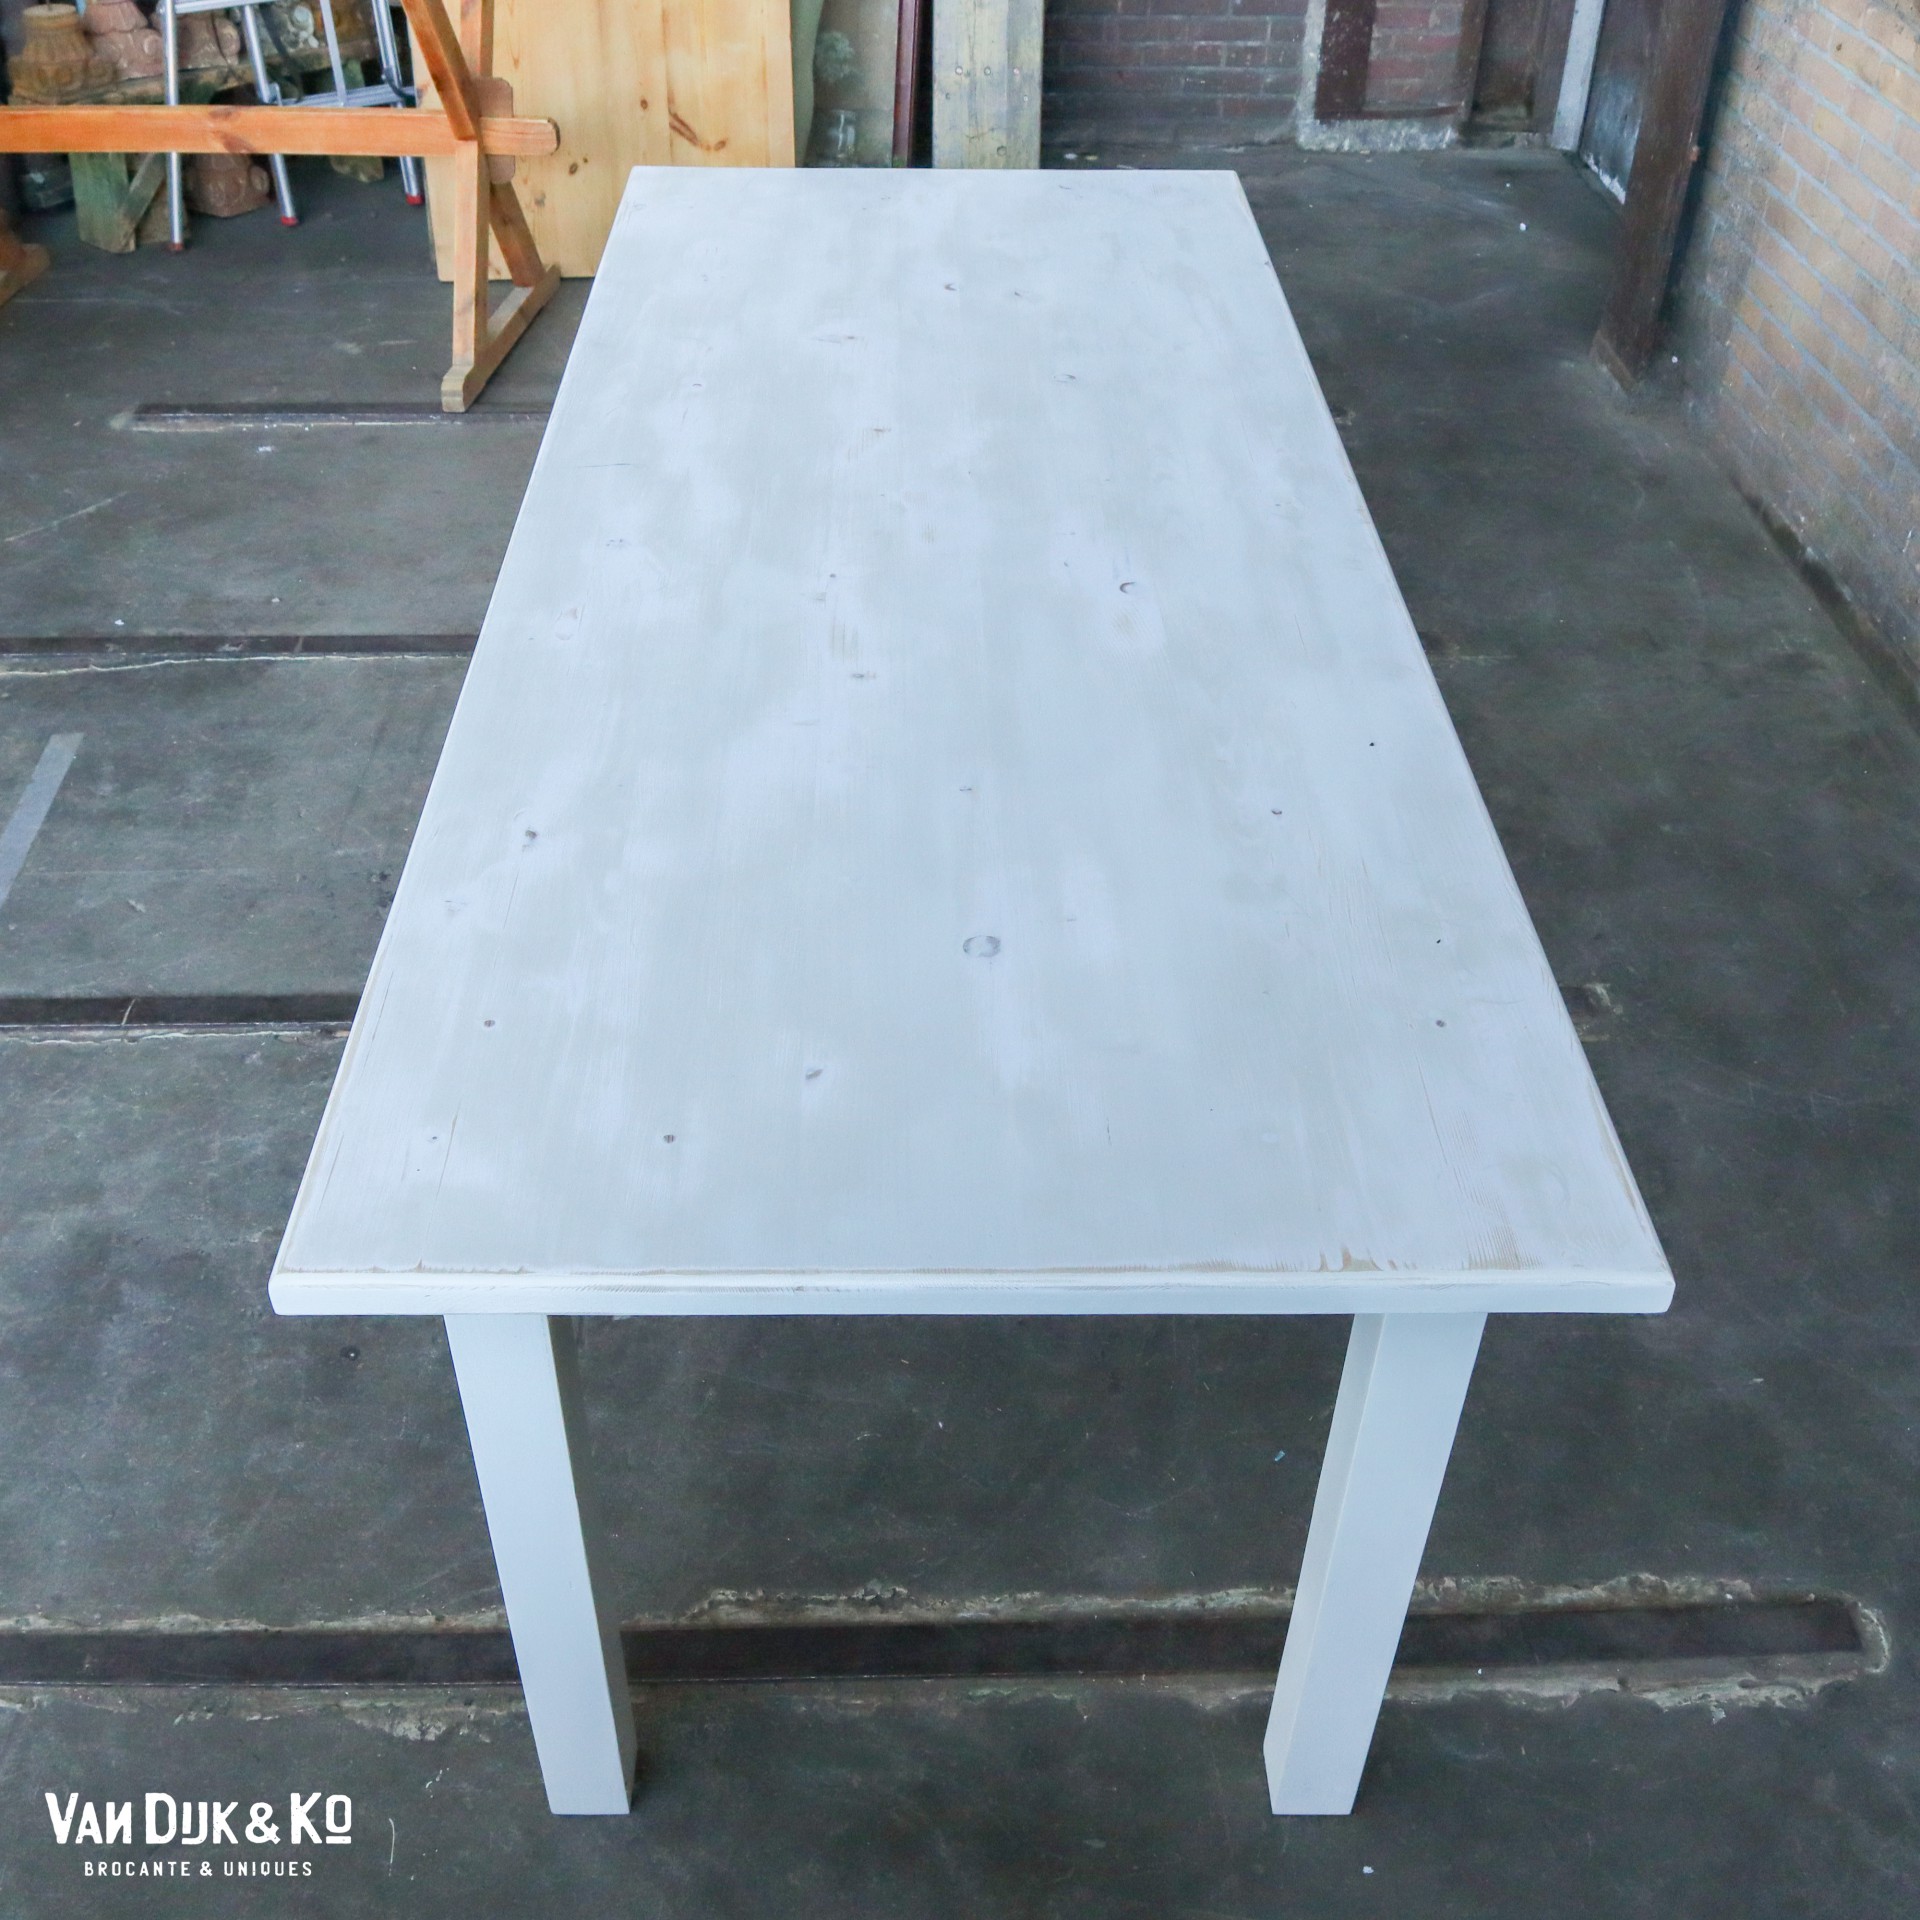 federatie expositie een paar Witte houten tafel » Van Dijk & Ko